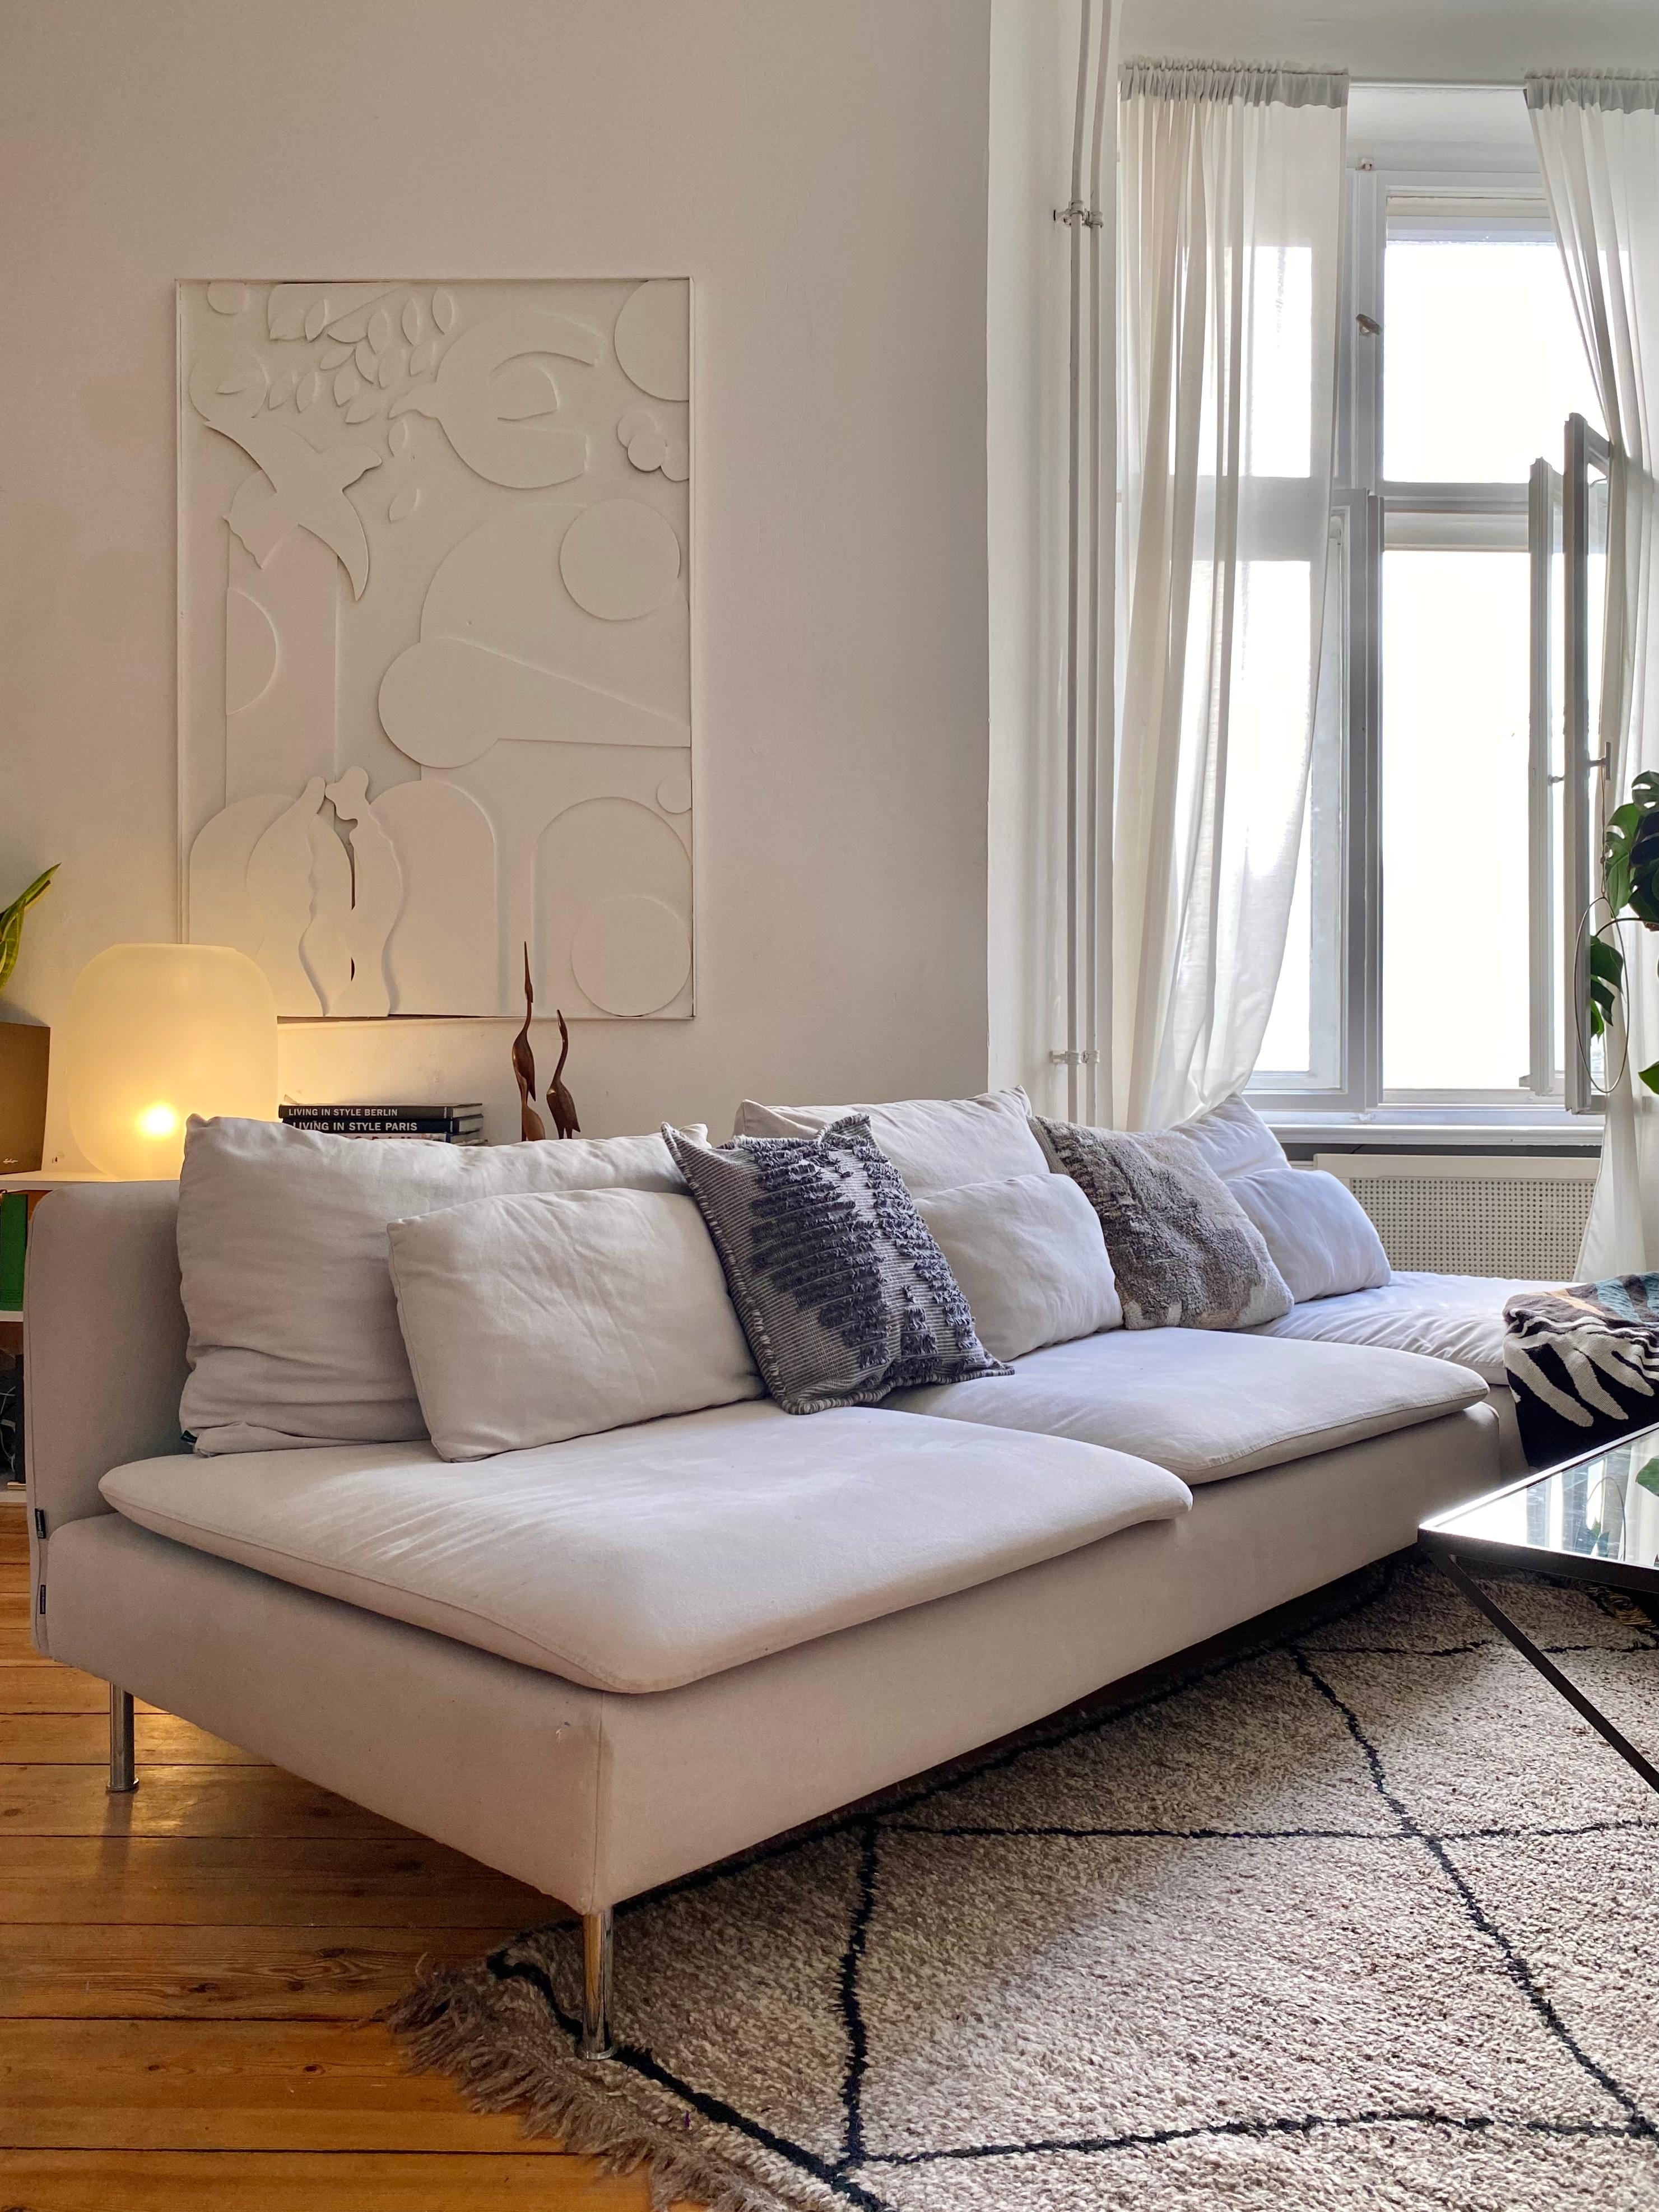 🌺 #sofa #couch #wohnzimmer #kunst #wandbild #beniourain #holzboden #altbau